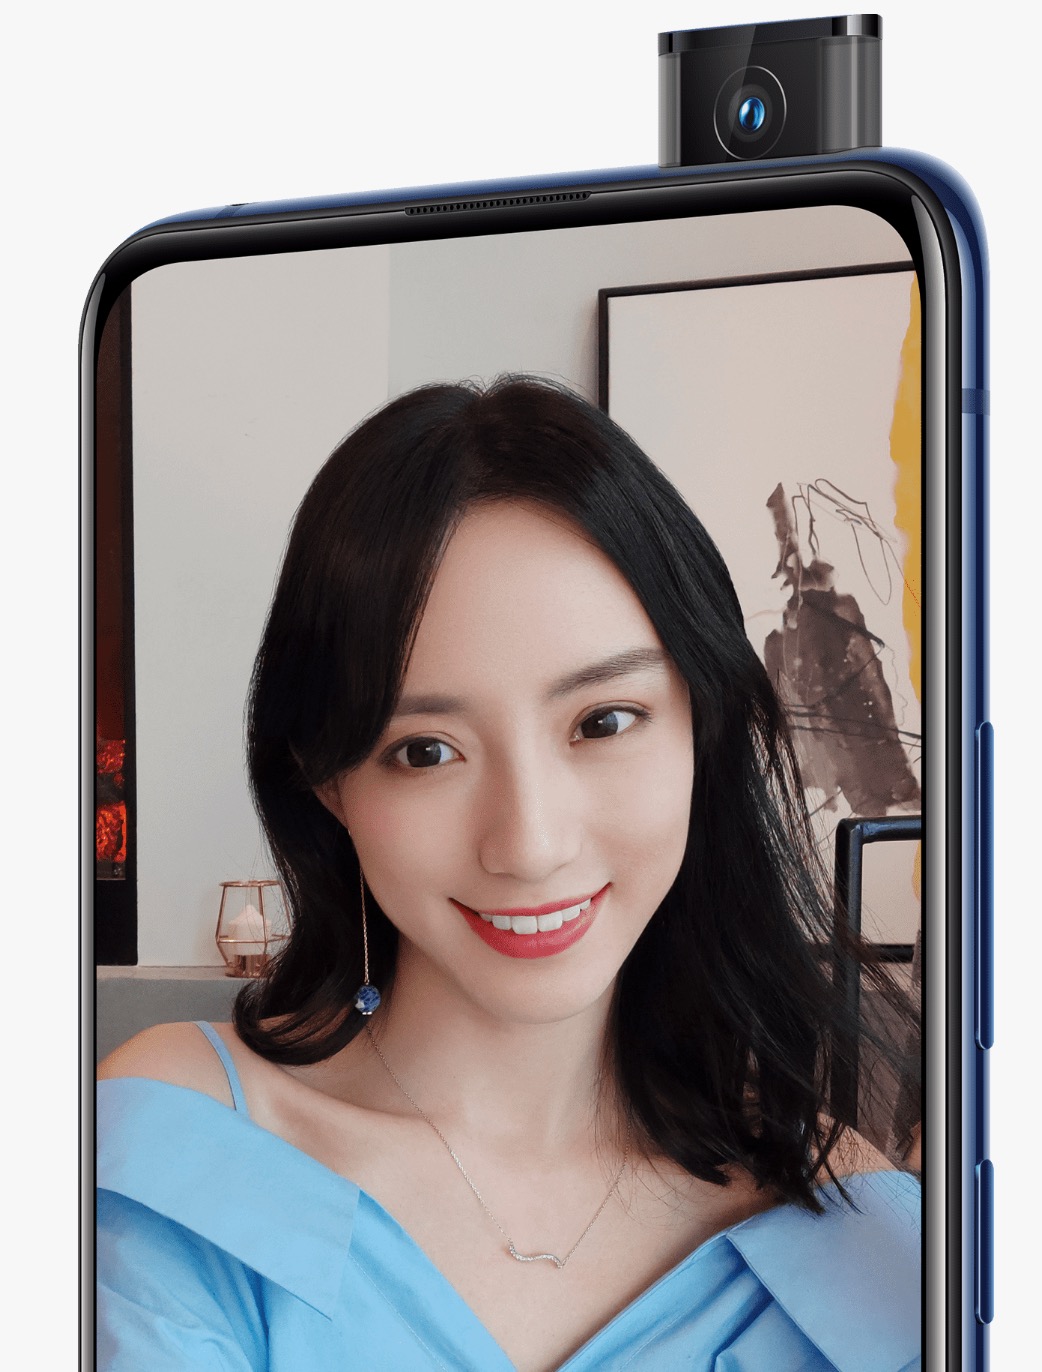 Vivo X27 và X27 Pro ra mắt với camera selfie thò
thụt, 3 camera sau, Snapdragon 710, 8GB RAM, giá 12.5 triệu